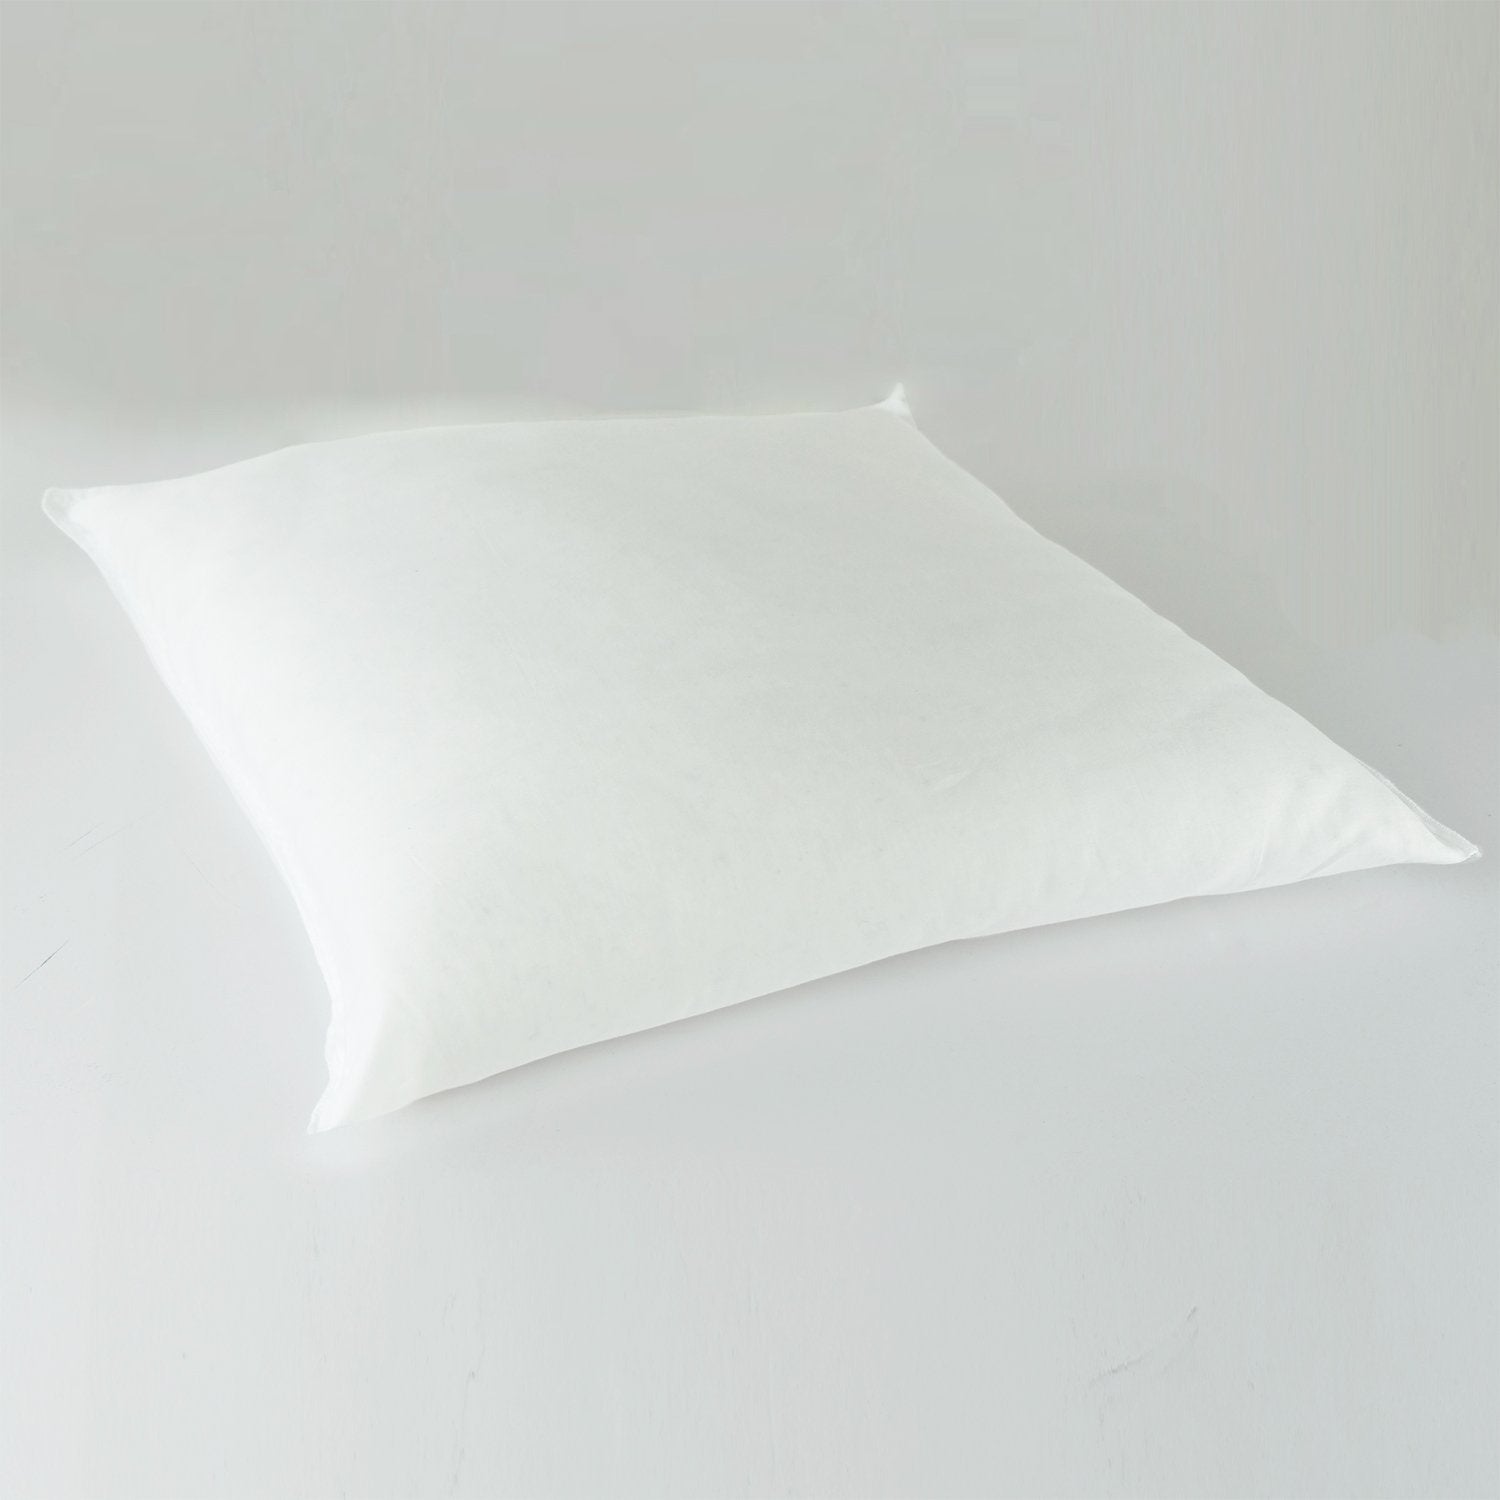 J-Life Seikai Ha Navy Zabuton Floor Pillow_Pillows & Shams_Zabuton Floor Pillows_100% Cotton_Reversible_Handmade